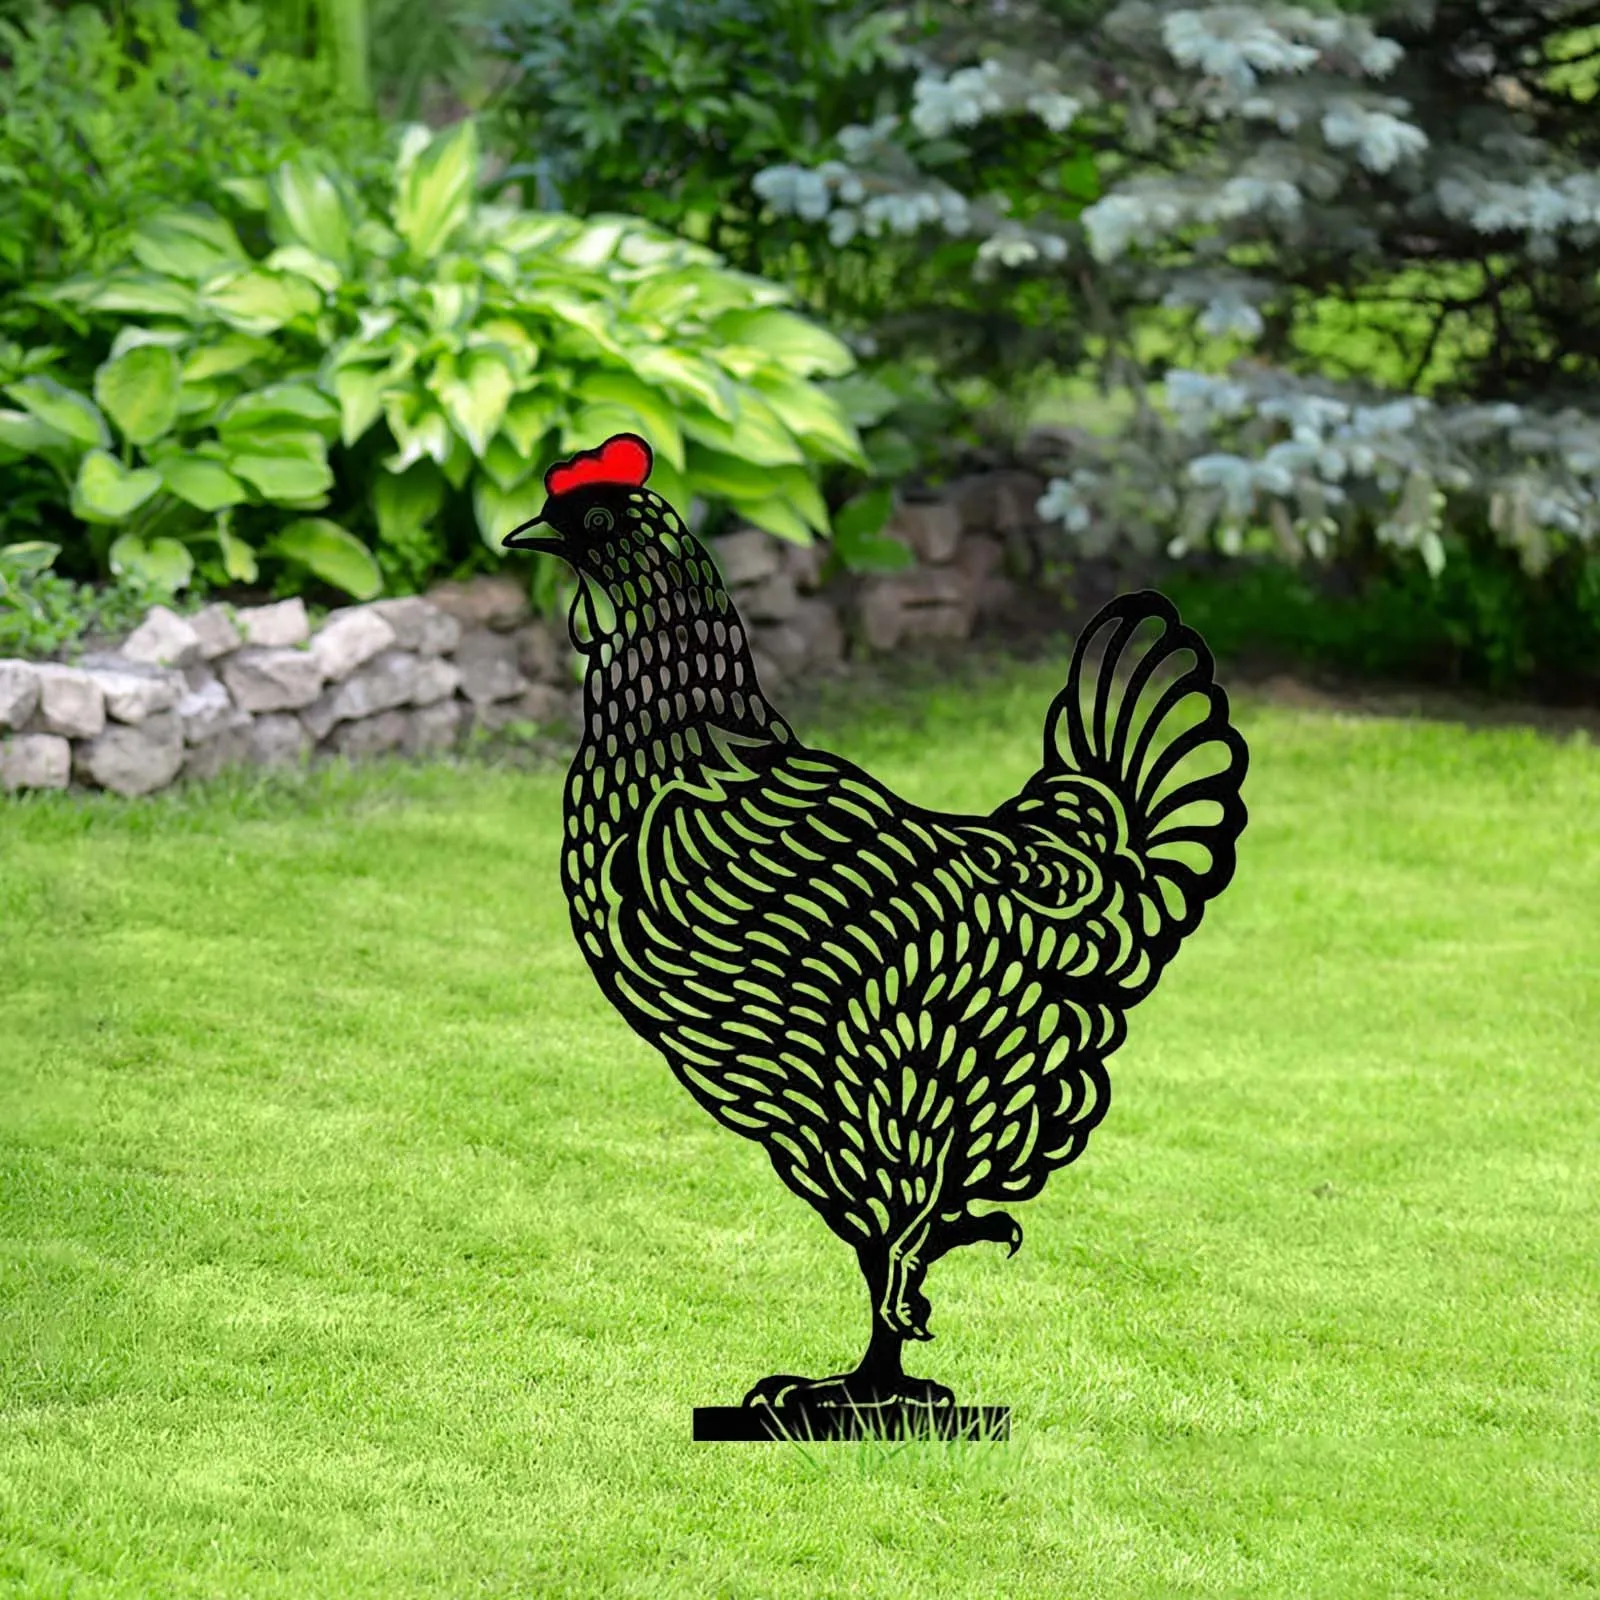 Amazon.com: 5 Pack Chicken Garden Decorative Statues，Chicken Yard Art, Outdoor  Garden Decor Black Rooster Silhouette Stake for Yards, Ideal Yard, Garden, Lawn  Decor, Animal Outdoor Decorations : Patio, Lawn & Garden